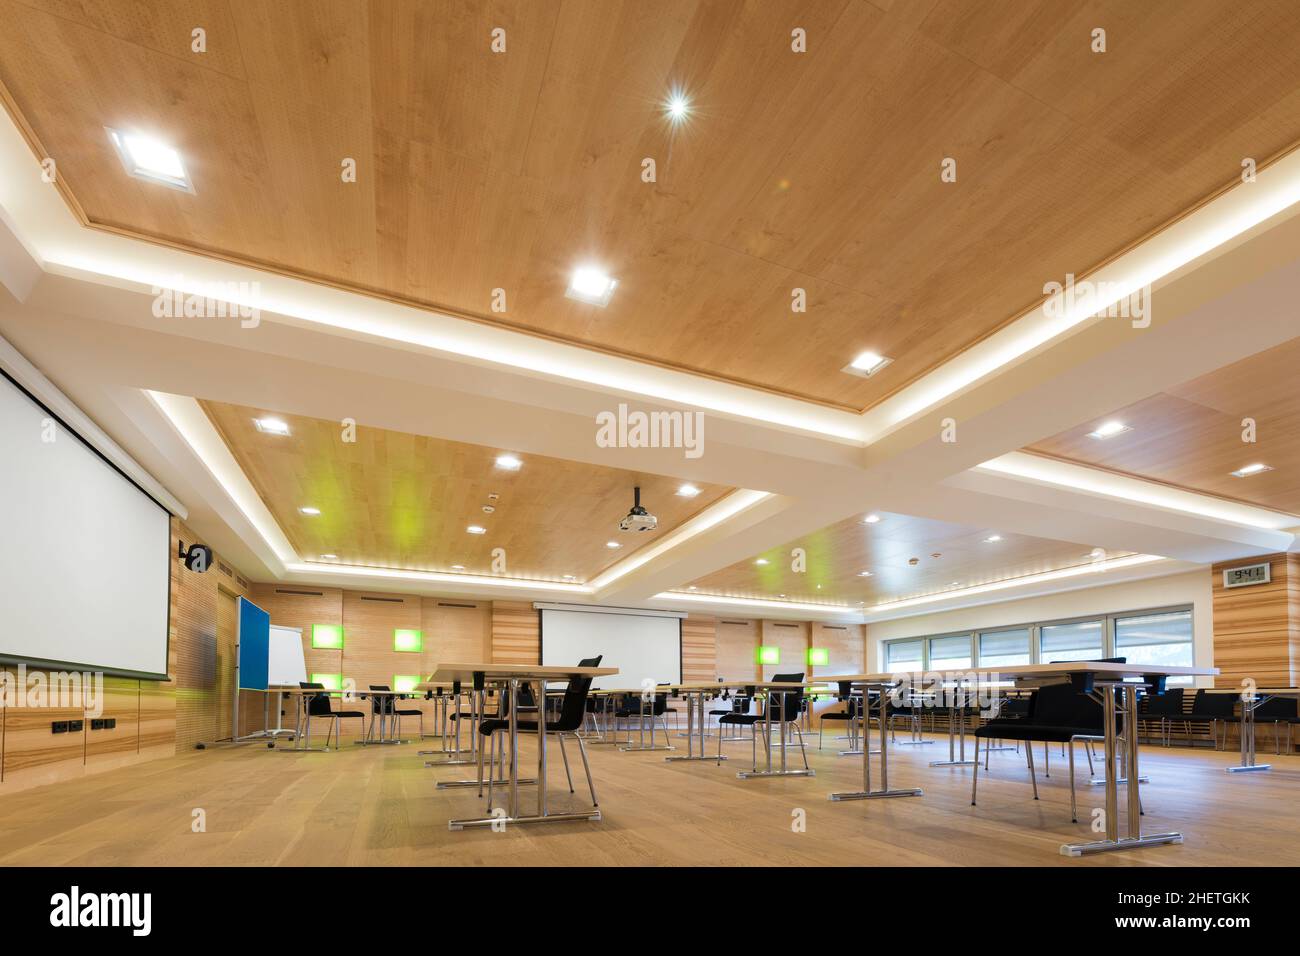 Holzarchitektur des modernen Konferenzraums mit Cahirs und Tischen Stockfoto